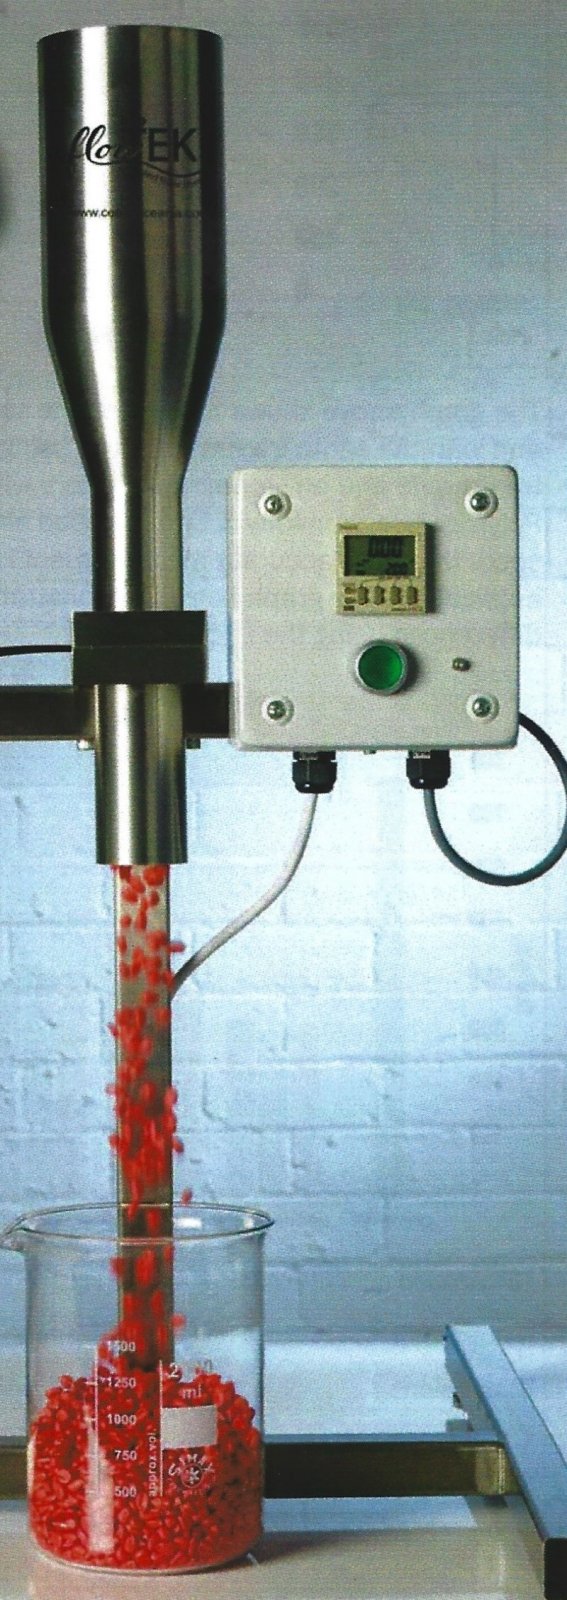 FlowTEK seed flow meter